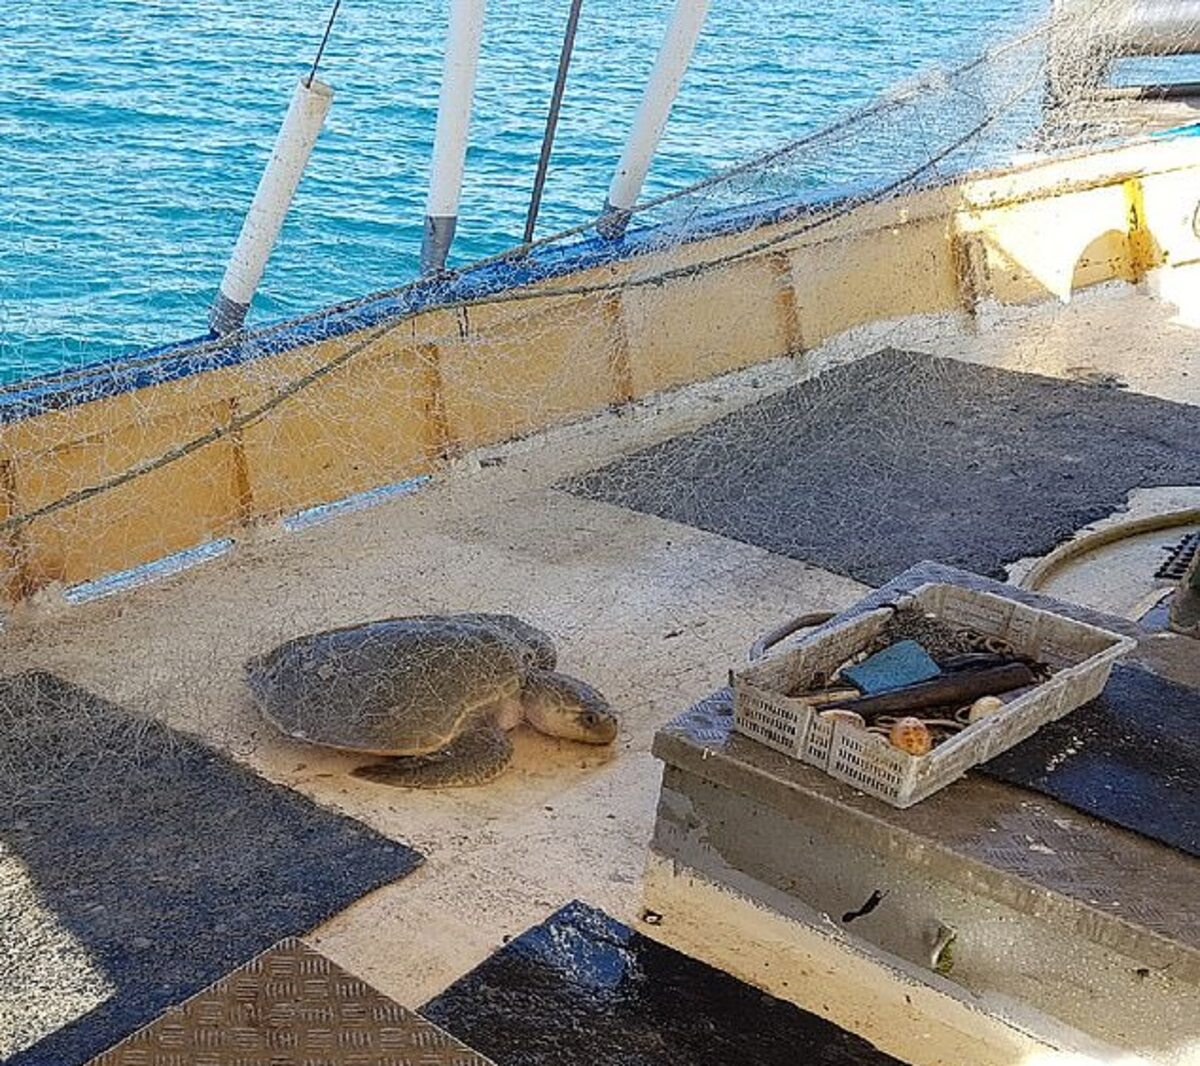 Złapany w sieć żółw morski 